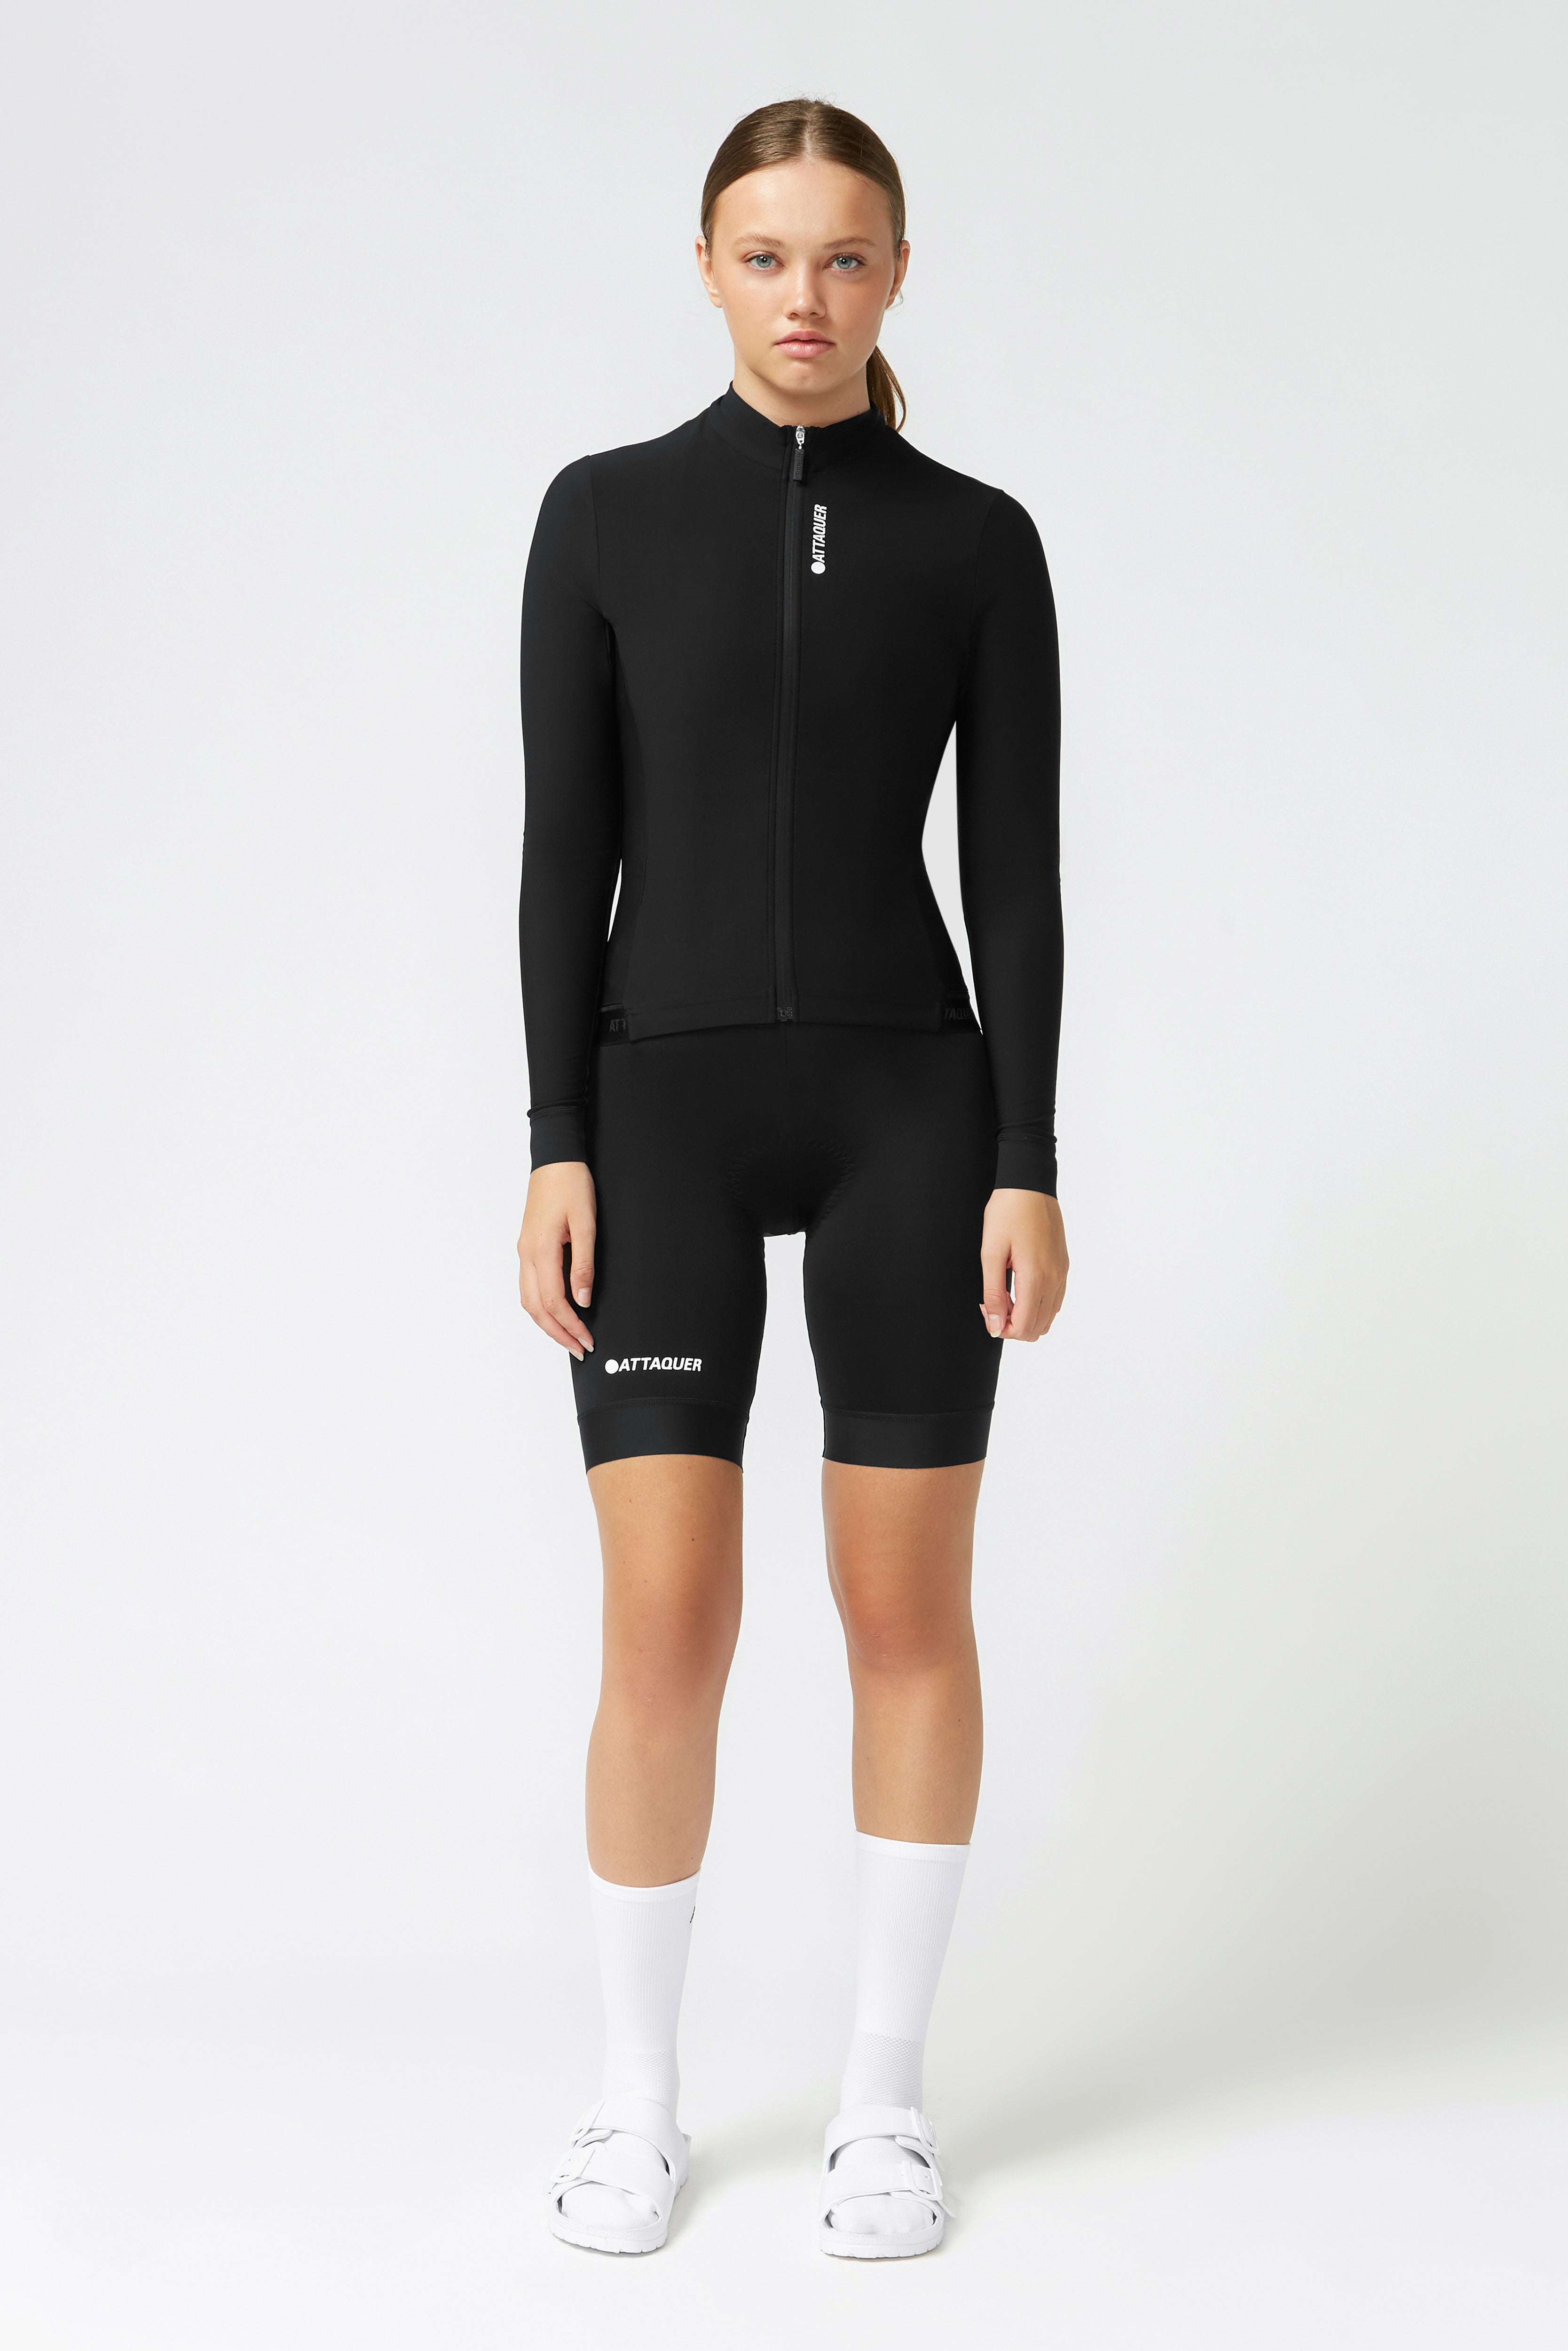 Womens Race Reflex Long Sleeved Jersey Black | Attaquer